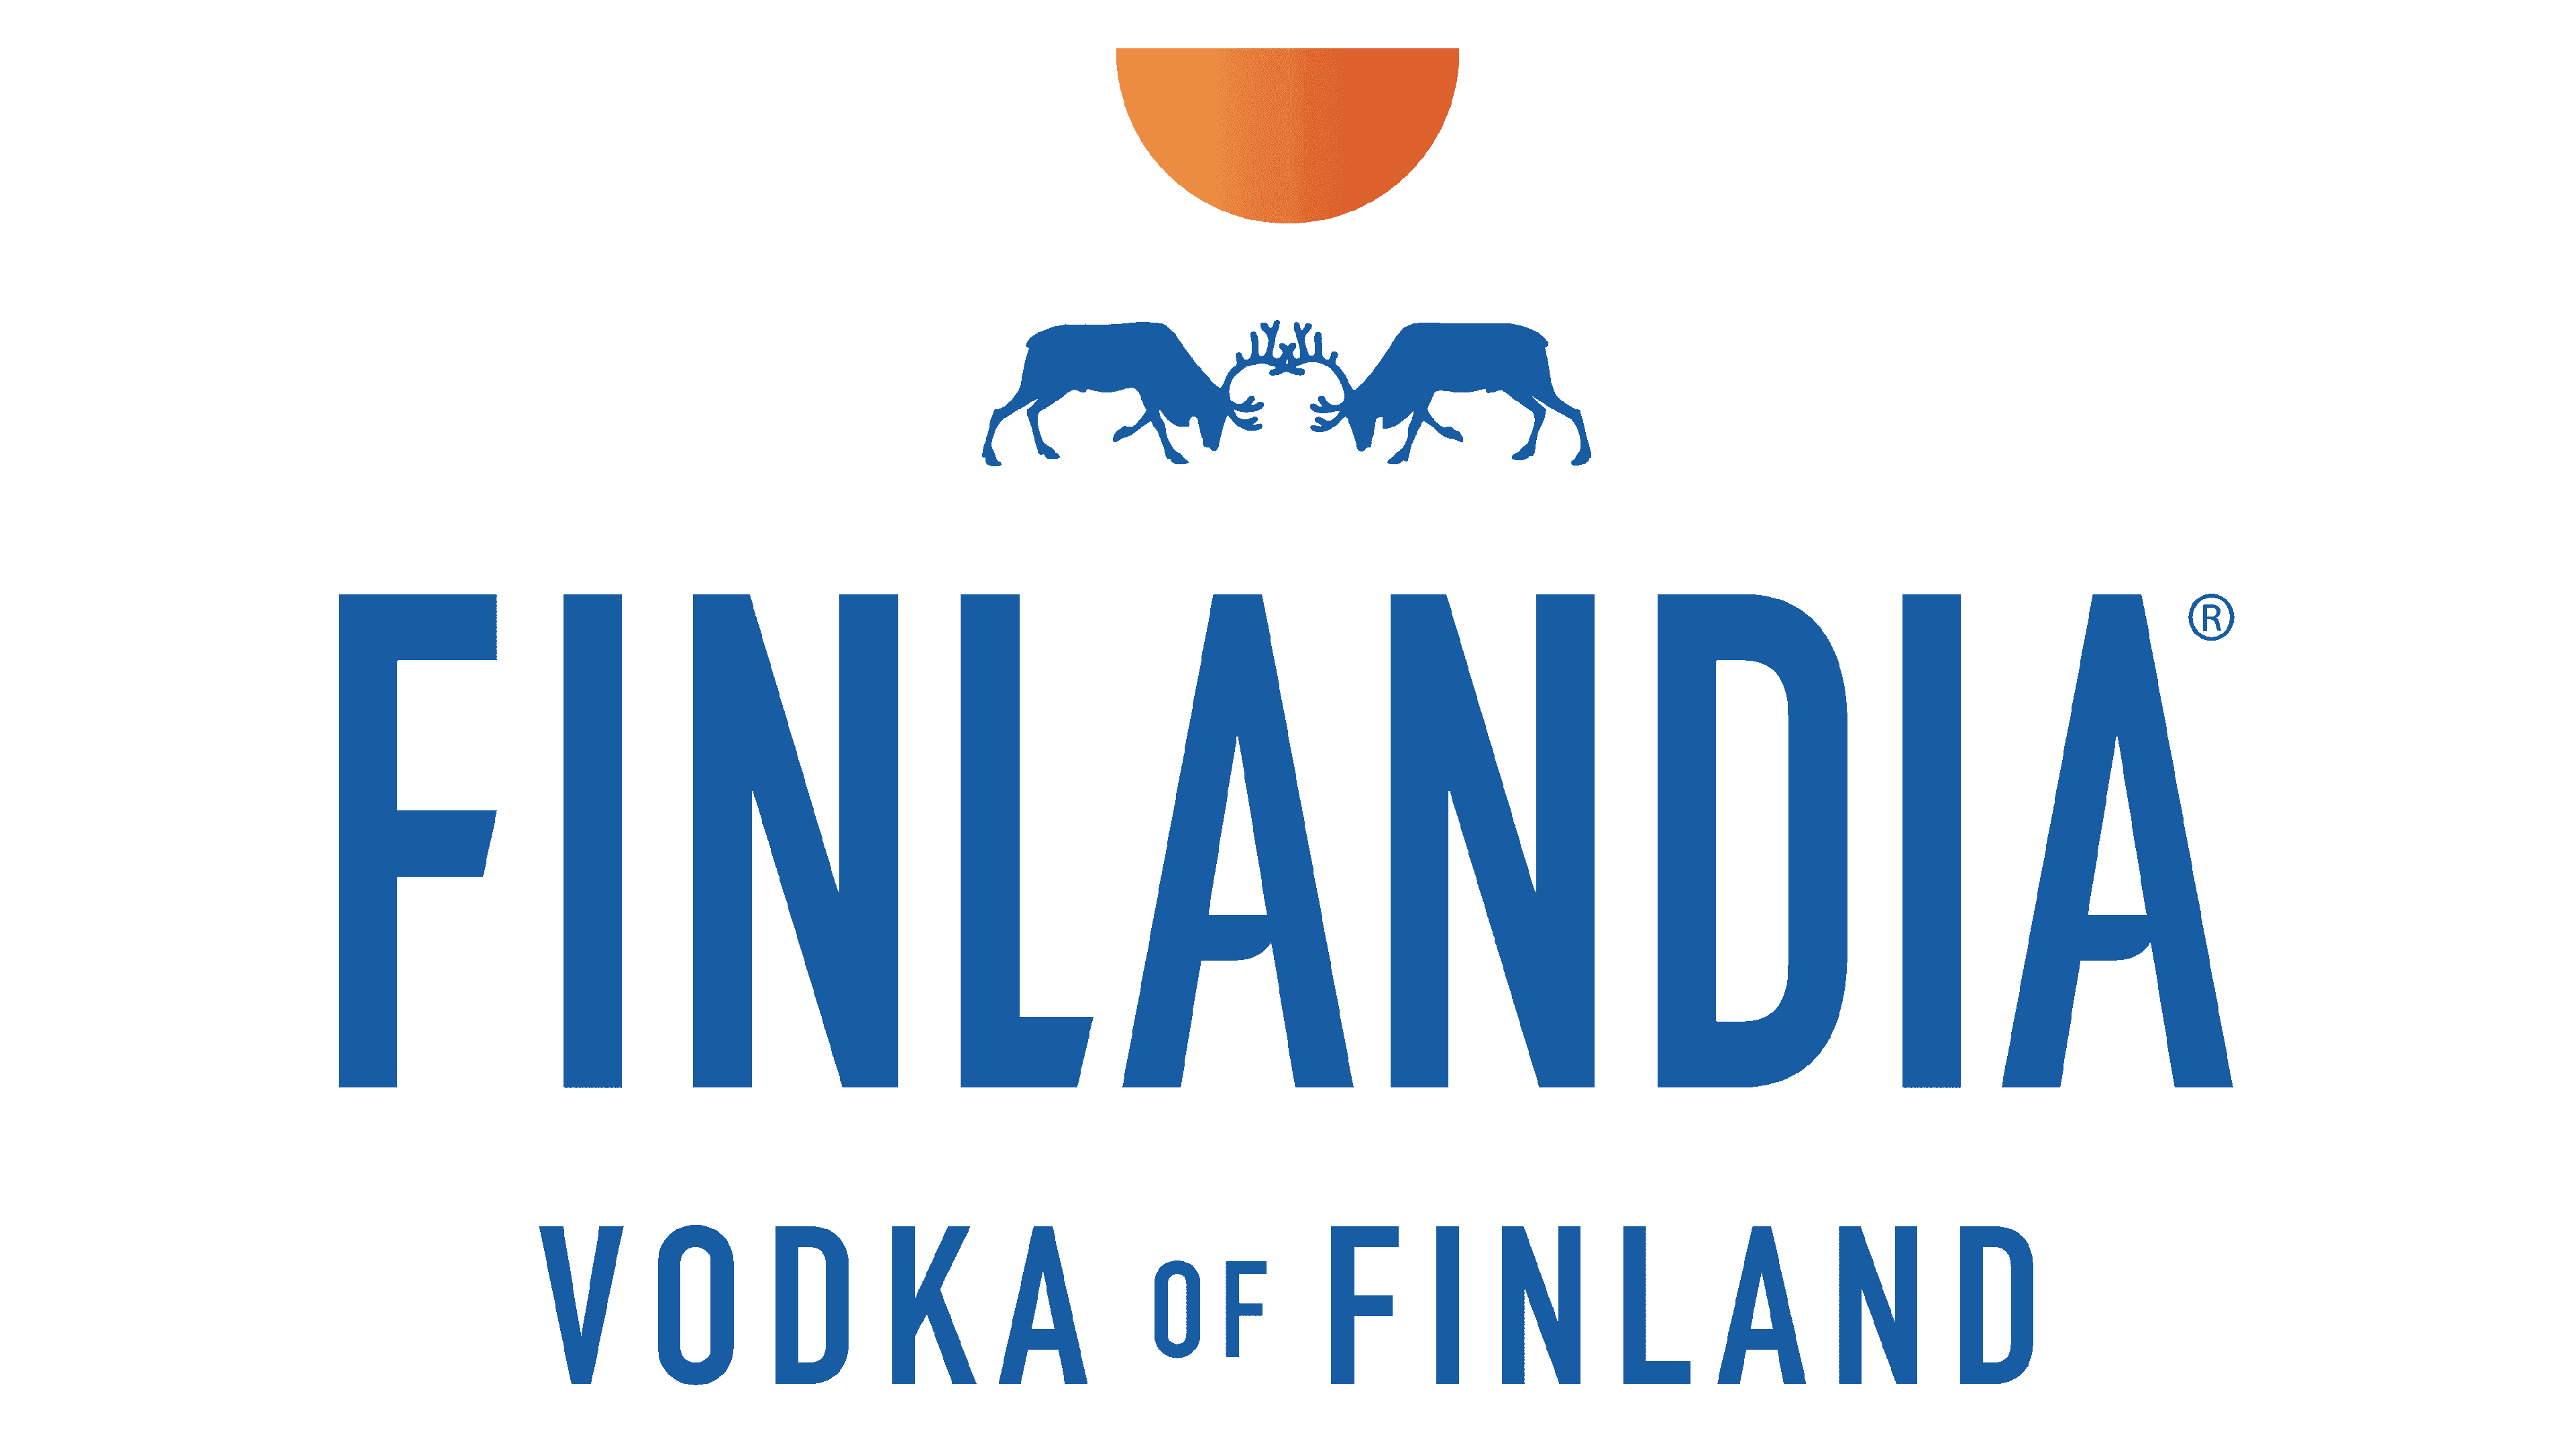 Finlandia Logo Logo